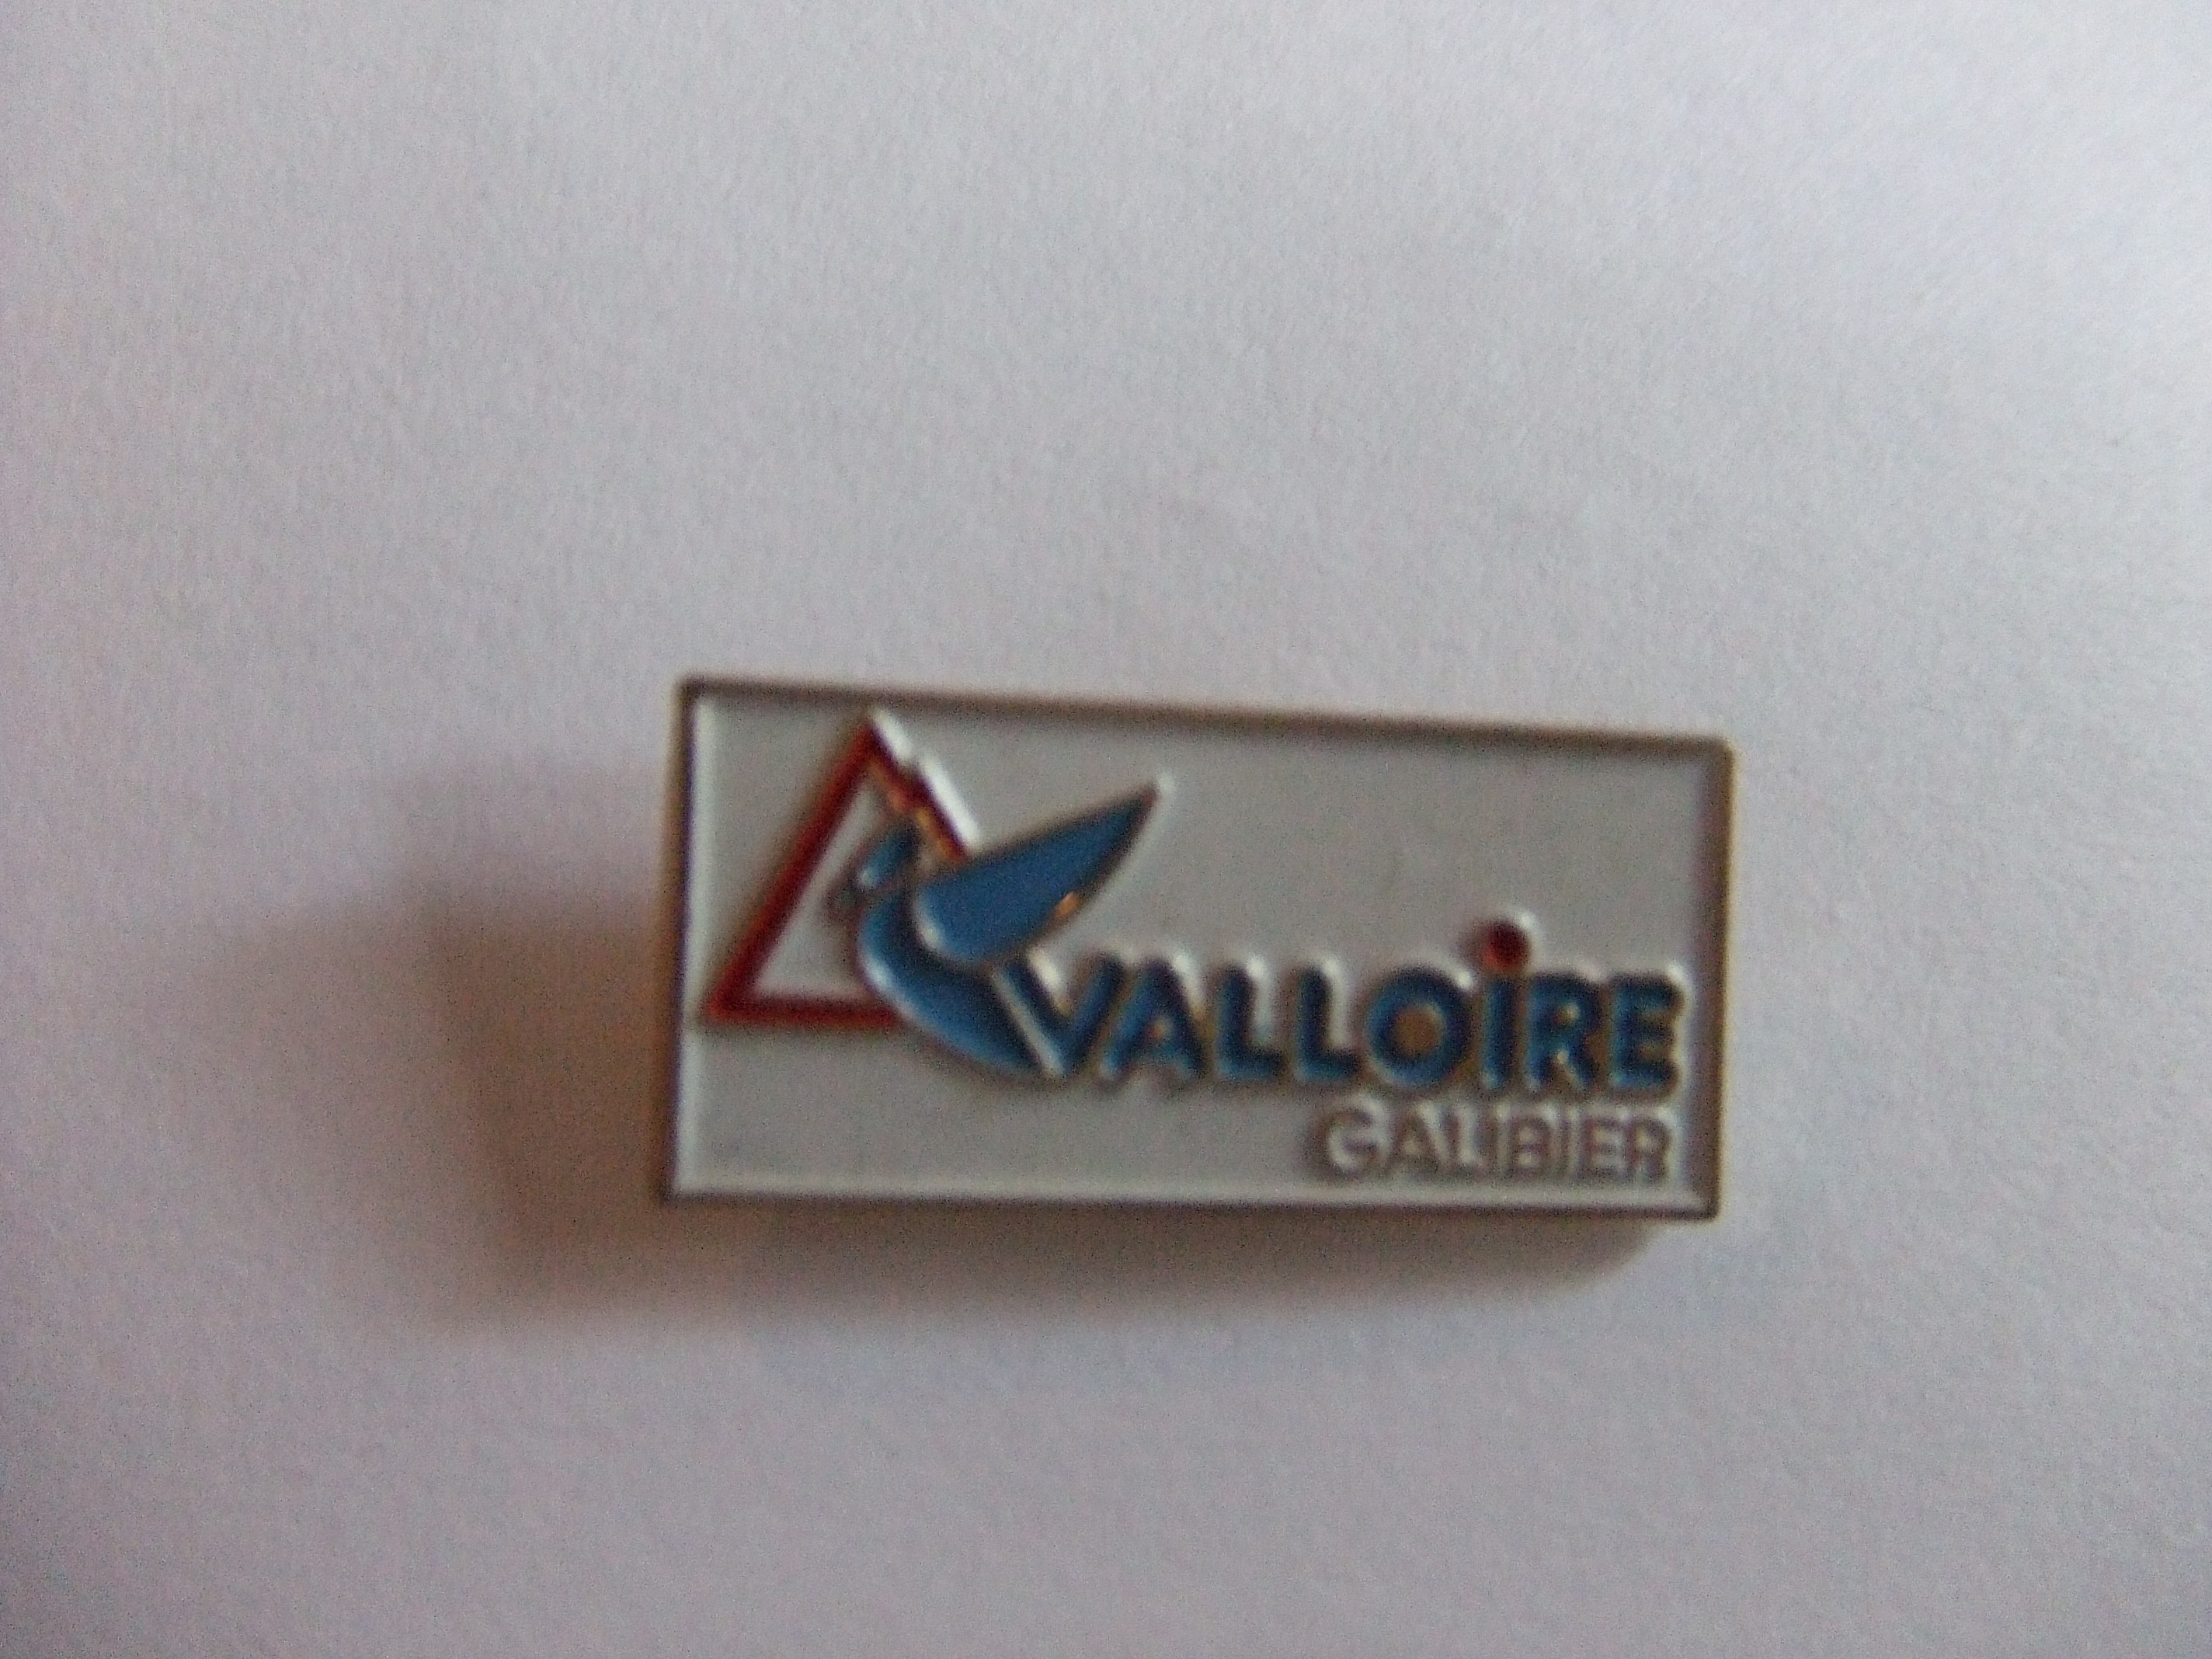 Skieen Valloire Galibier